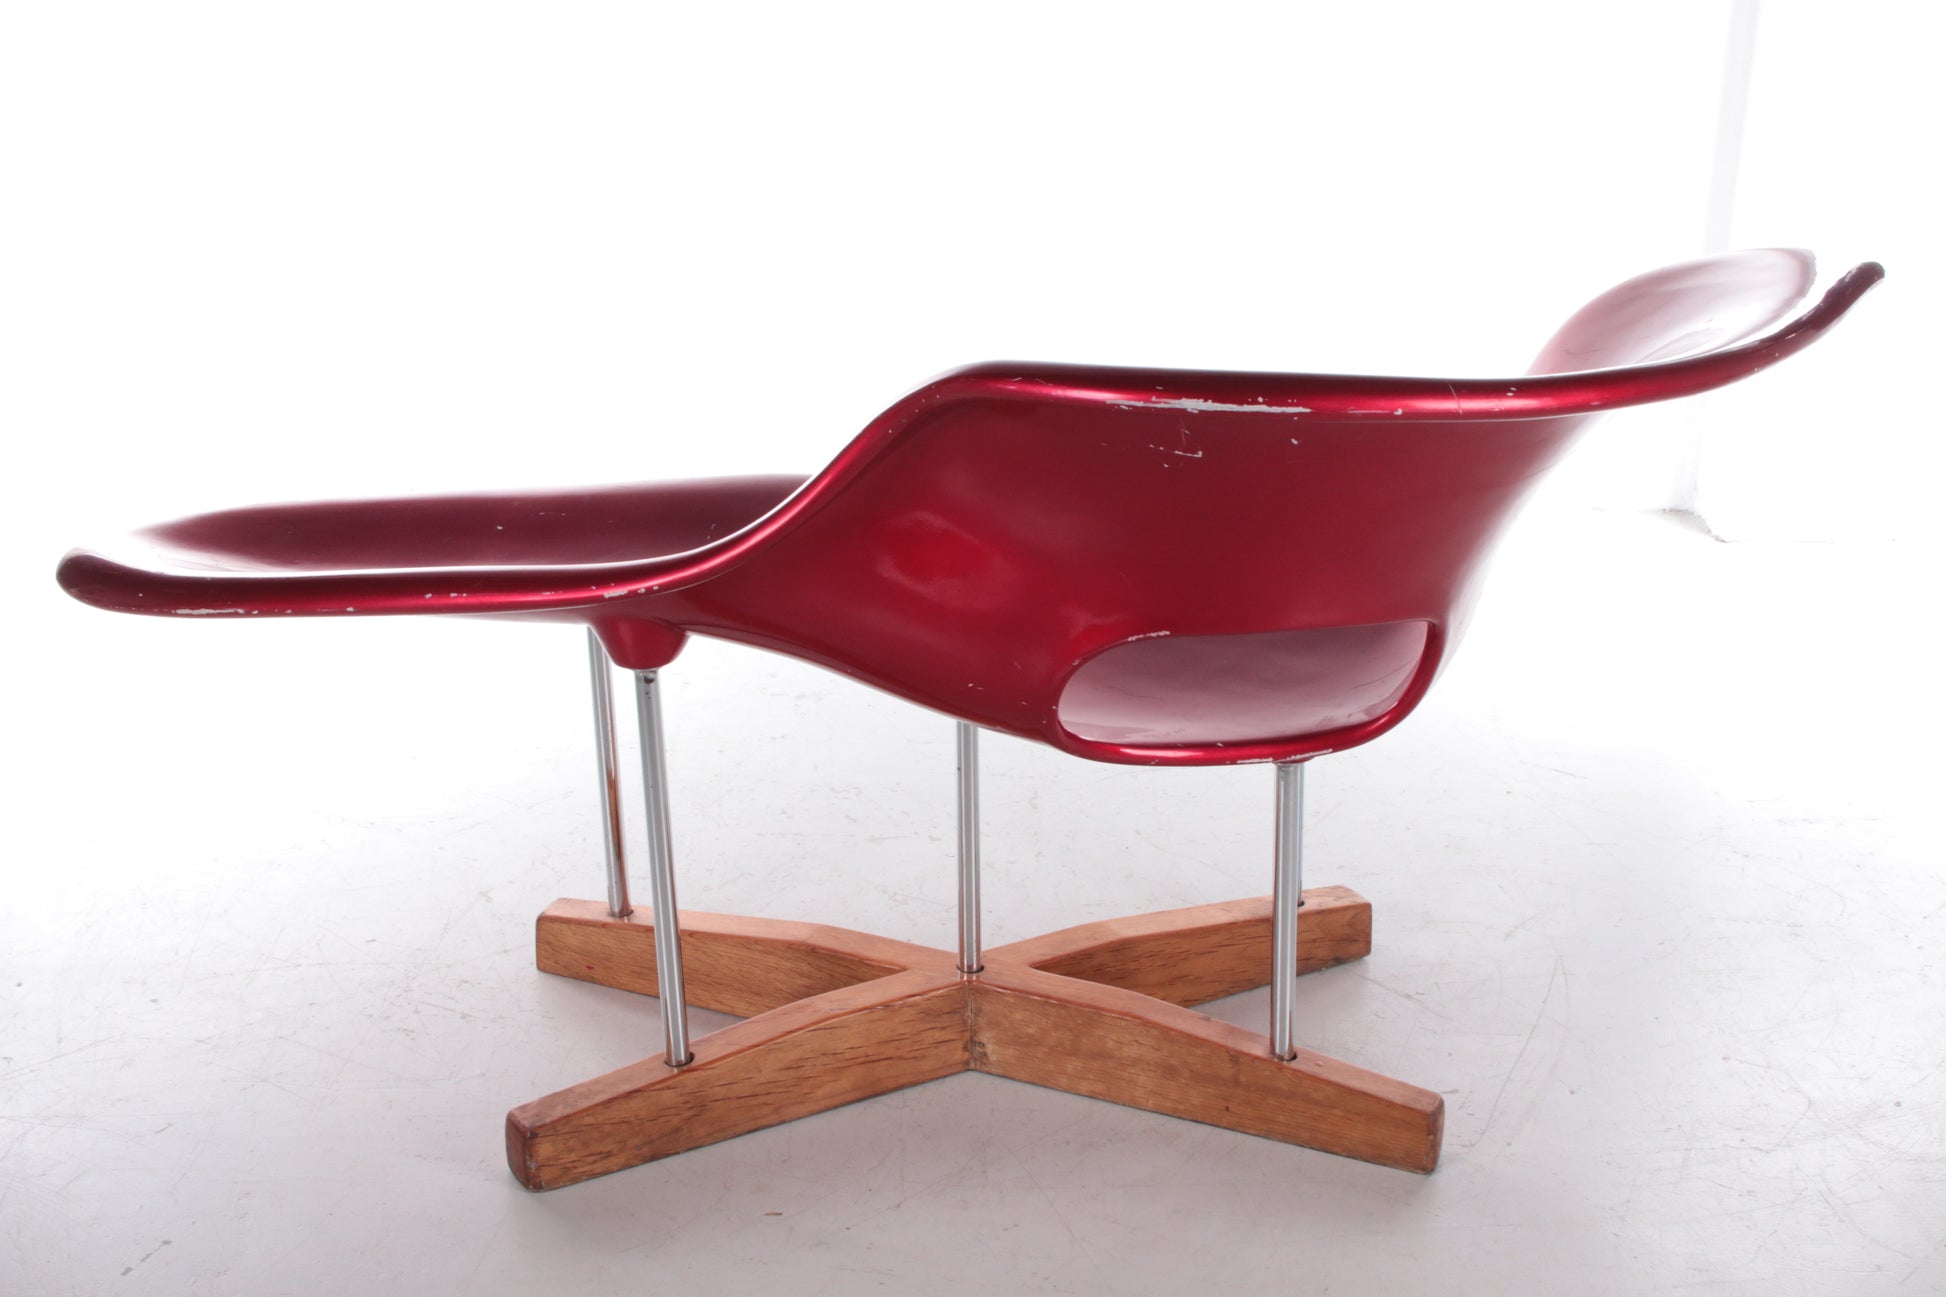 Vitra La chaise loungestoel met houten onderstel,1970